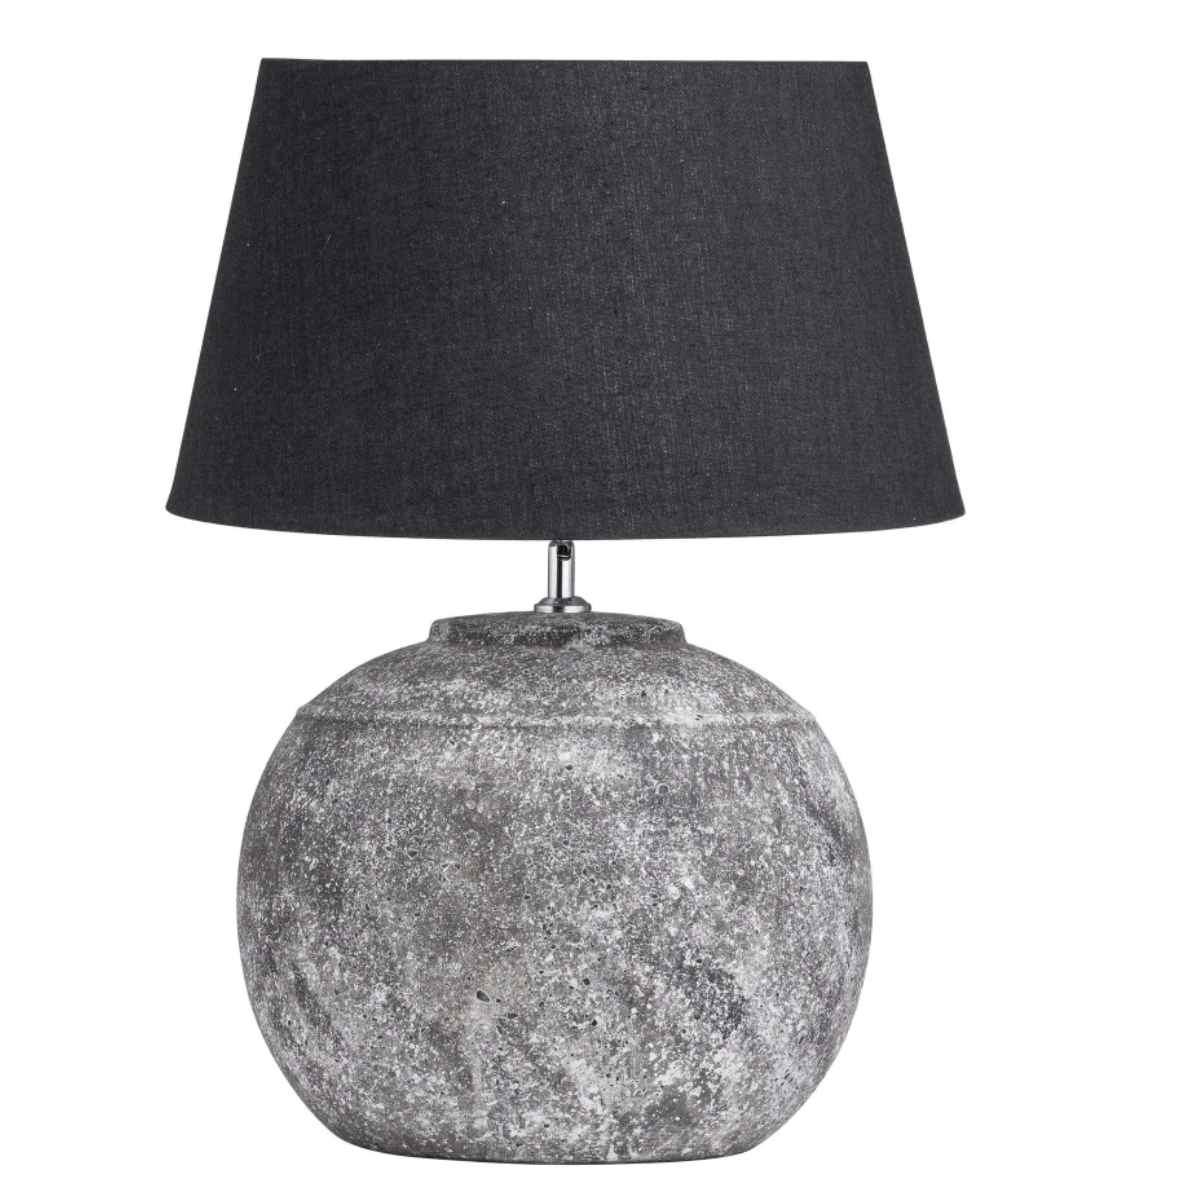 Regola Aged Stone Ceramic Table Lamp